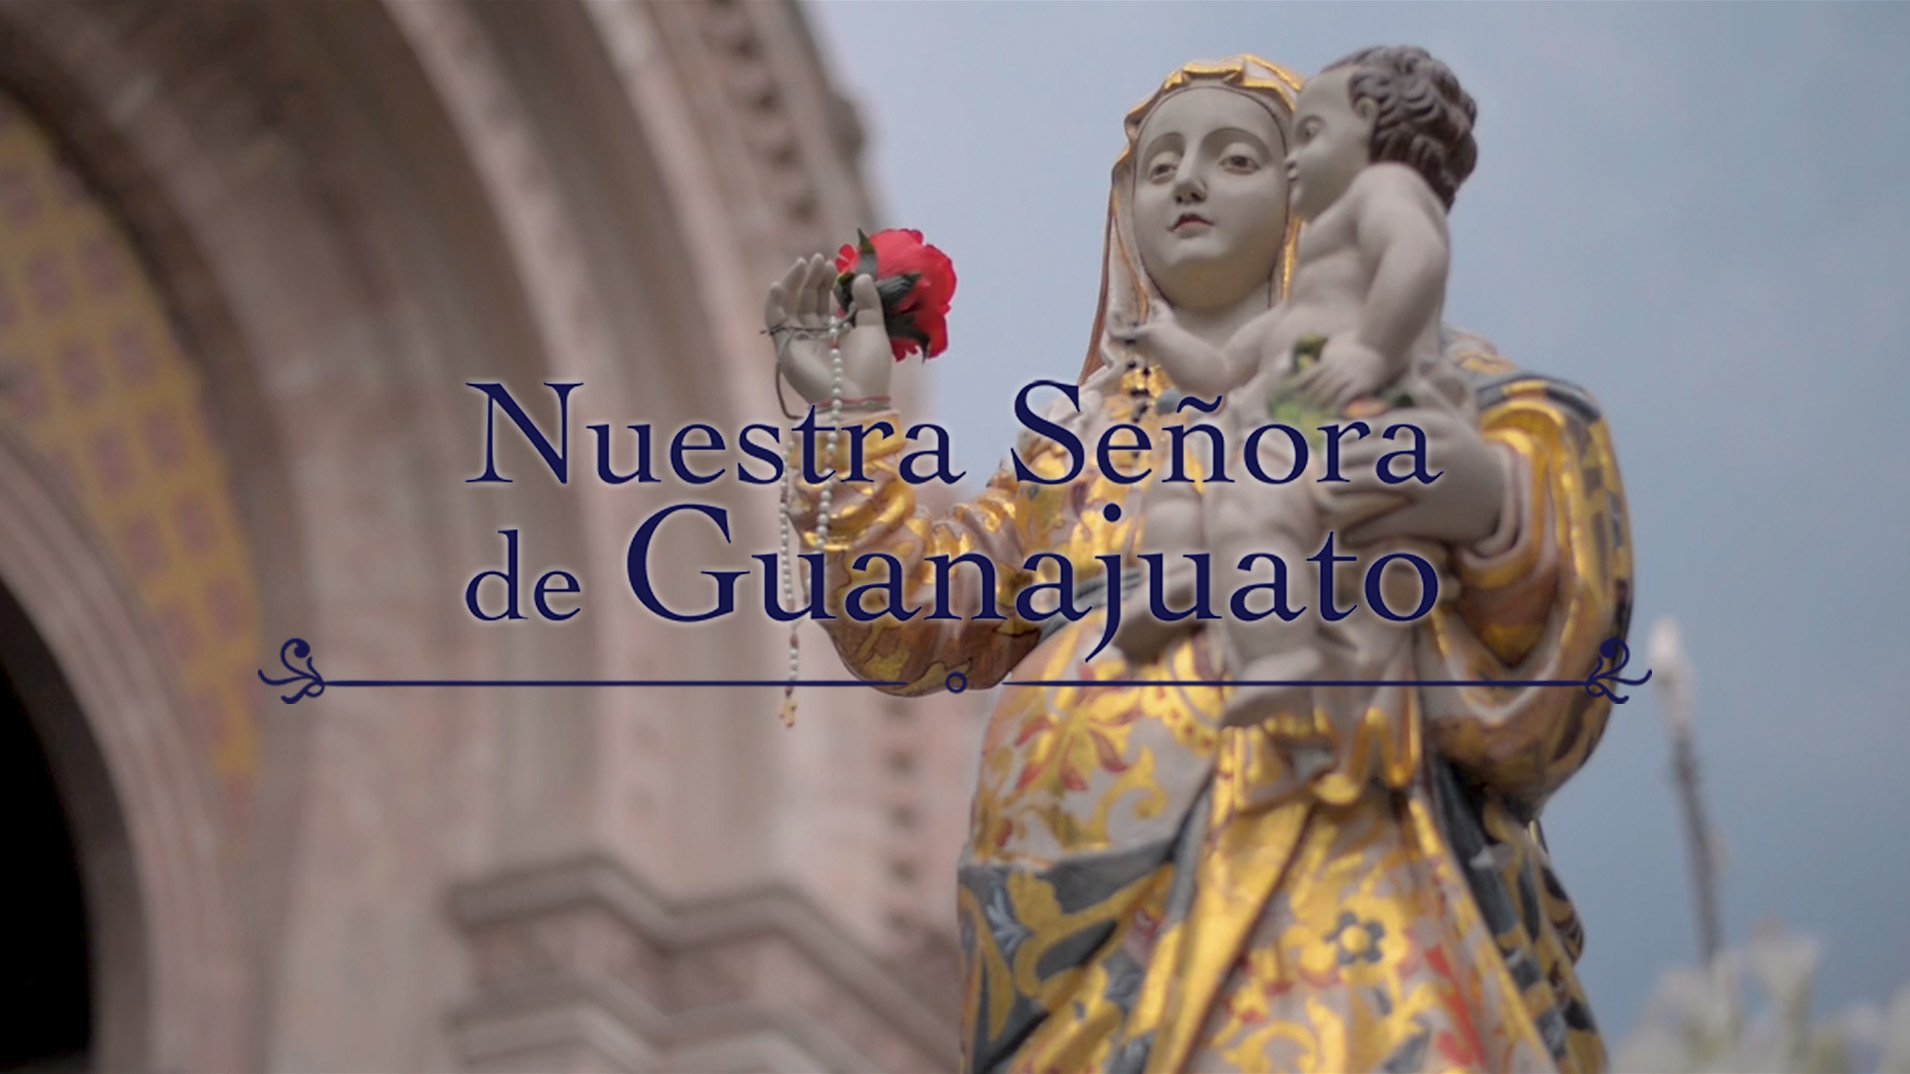 Nuestra señora de Guanajuato